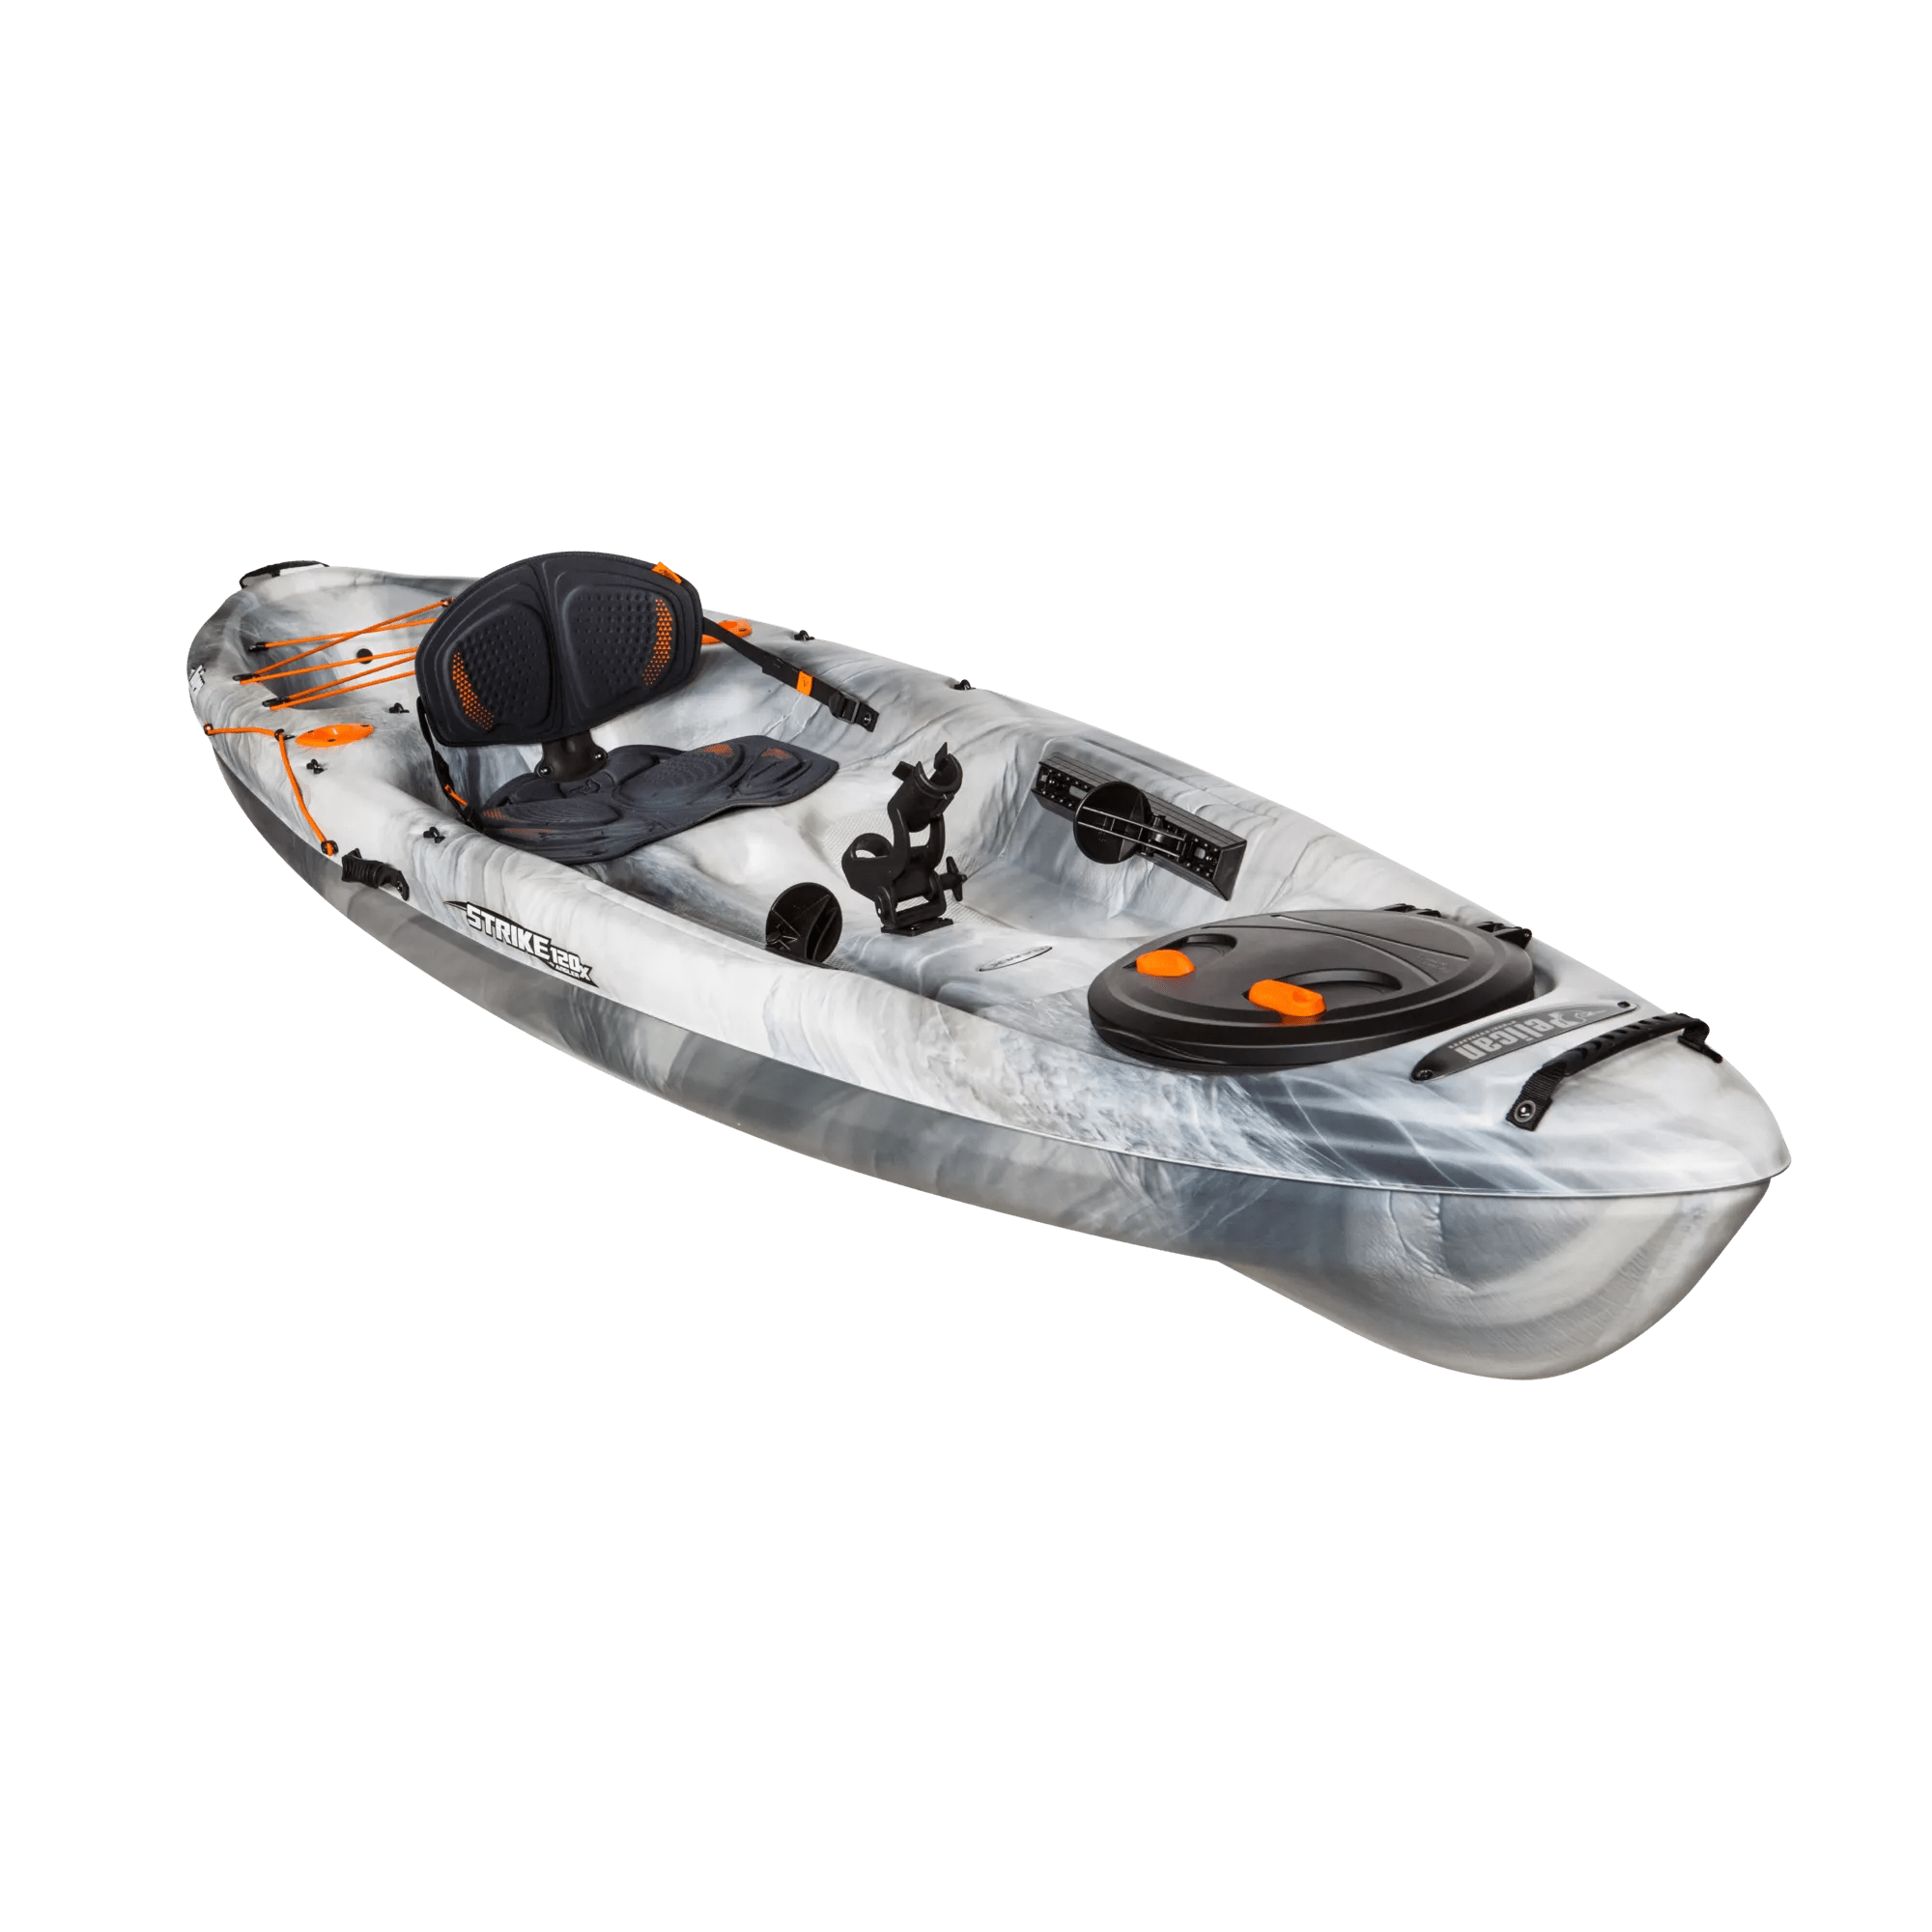 PELICAN - Strike 120X Angler Fishing Kayak - Grey - KWP12P208 - ISO 